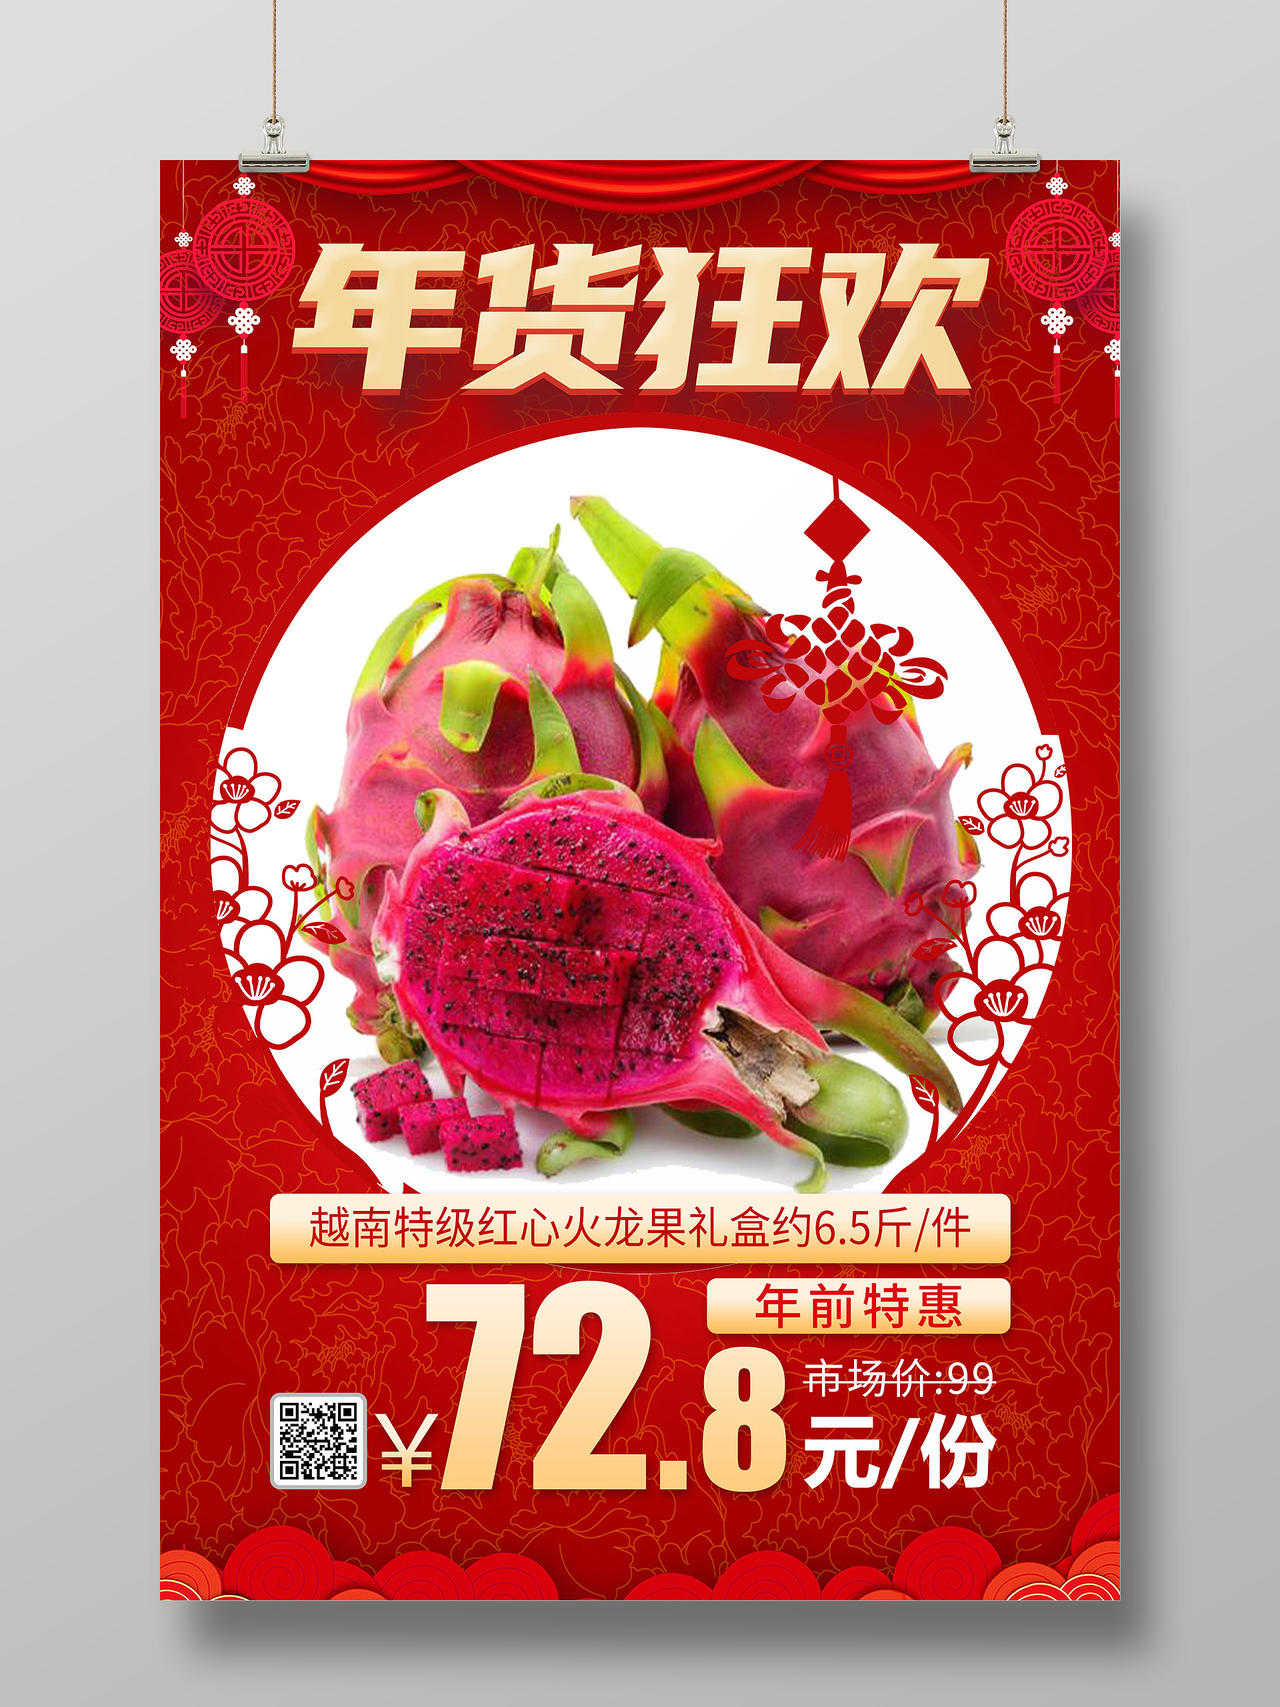 红色喜庆年货狂欢越南特级红心火龙果特惠促销宣传海报